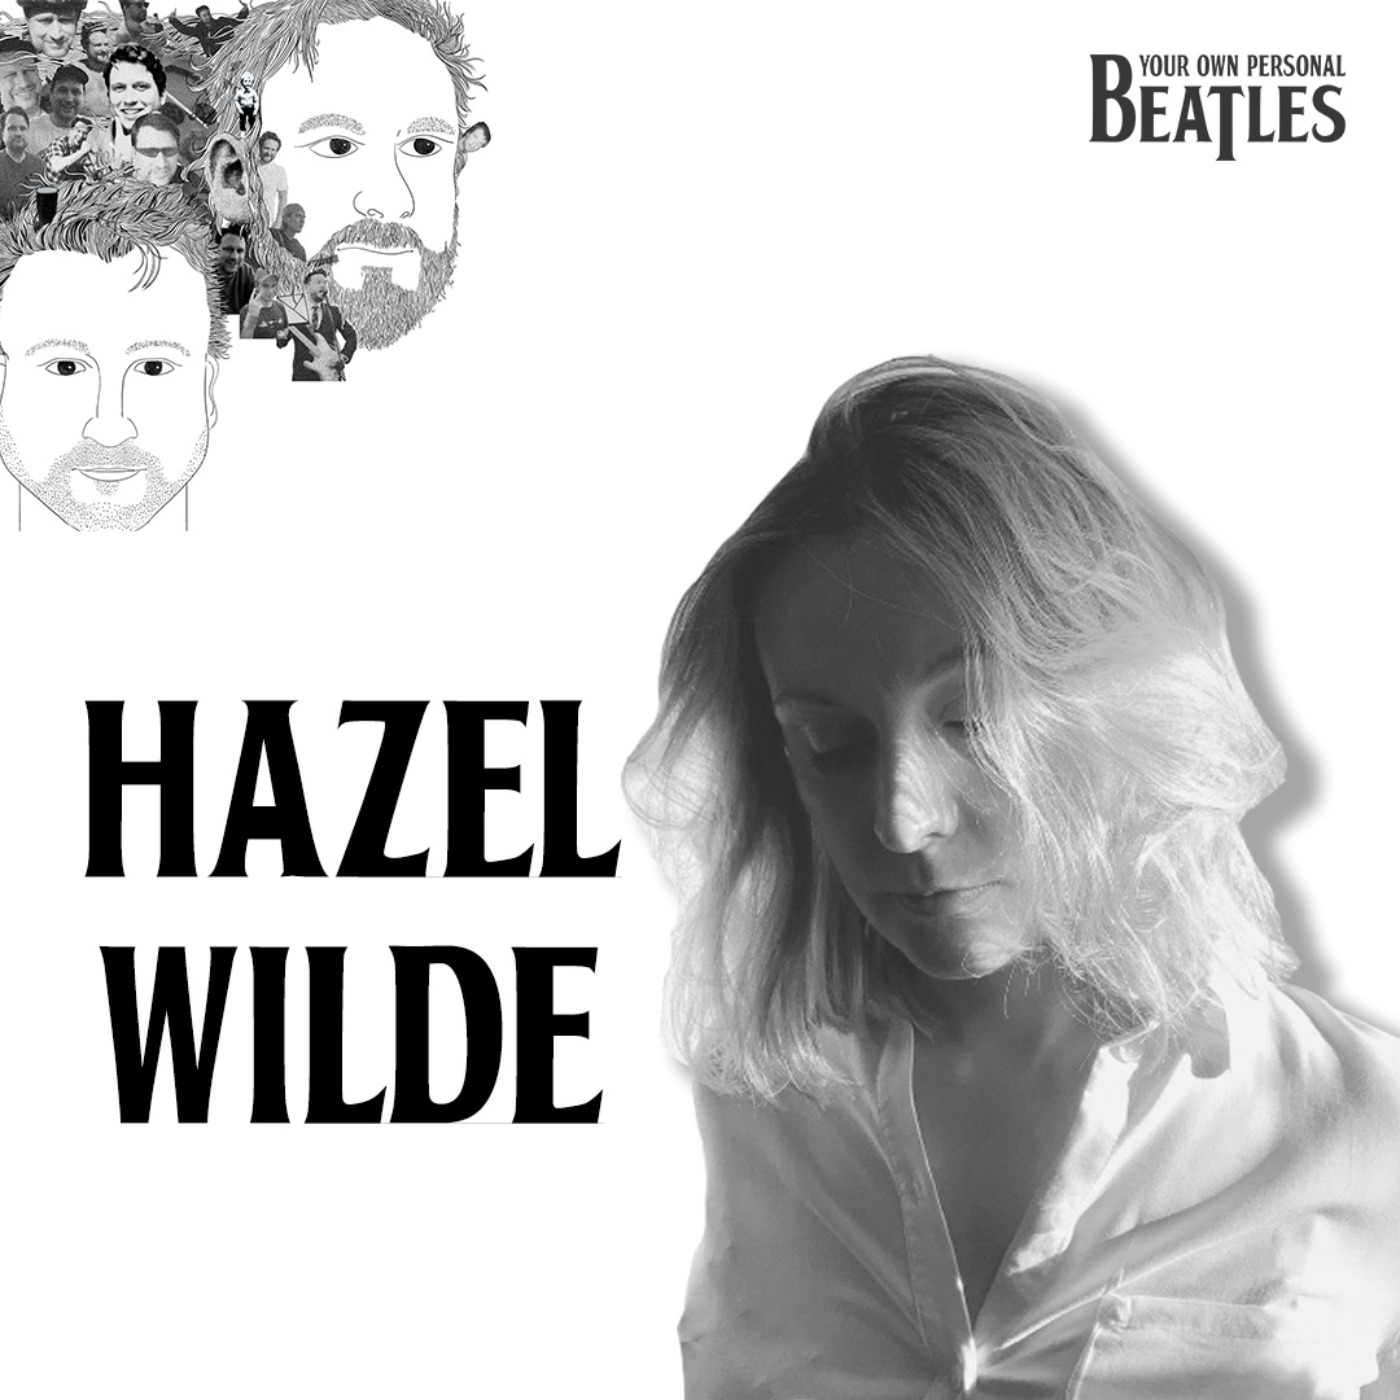 Hazel Wilde’s Personal Beatles